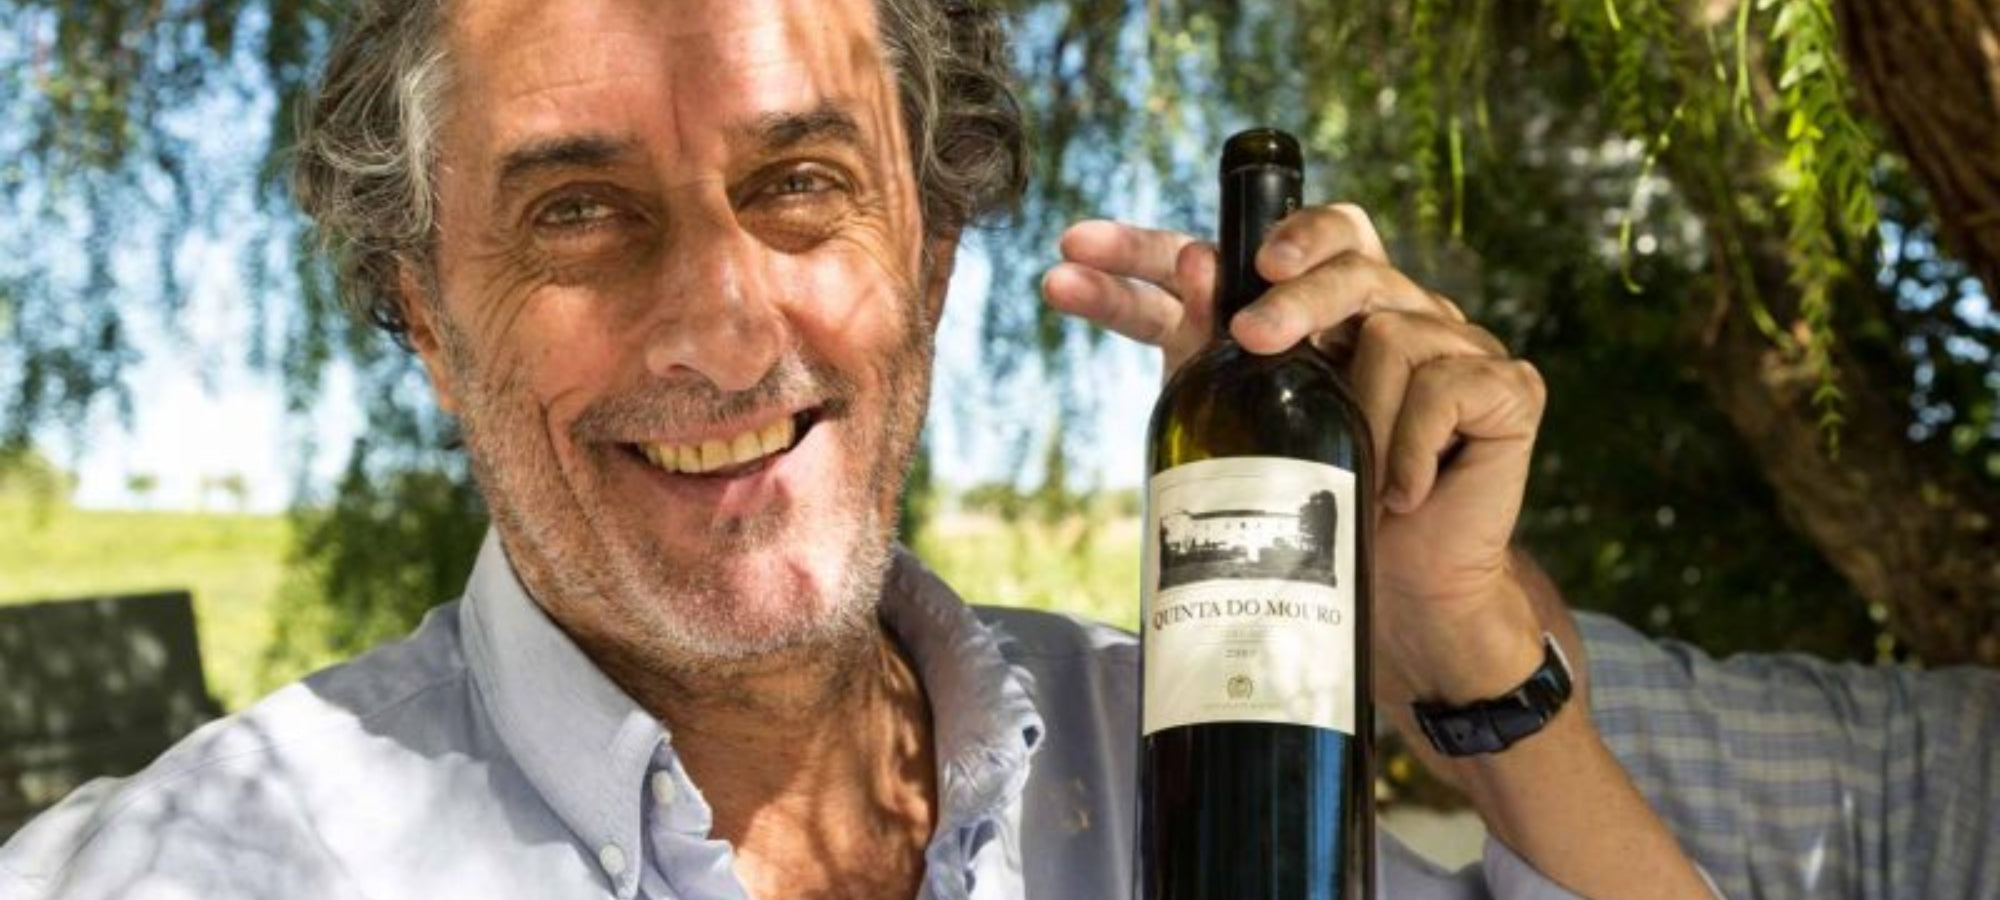 Auf dem Bild ist Miguel Louro zu sehen, ein Winzer bei der Quinta do Mouro Kellerei. Er steht vor einer malerischen Kulisse und ist von Weinreben umgeben. Seine Hingabe und Leidenschaft für Wein spiegeln sich in den exquisiten Weinen wider, die er in der Quinta do Mouro herstellt. Die Kellerei ist bekannt für ihre unübertroffene Qualität und die außergewöhnlichen Geschmackserlebnisse, die sie bietet.